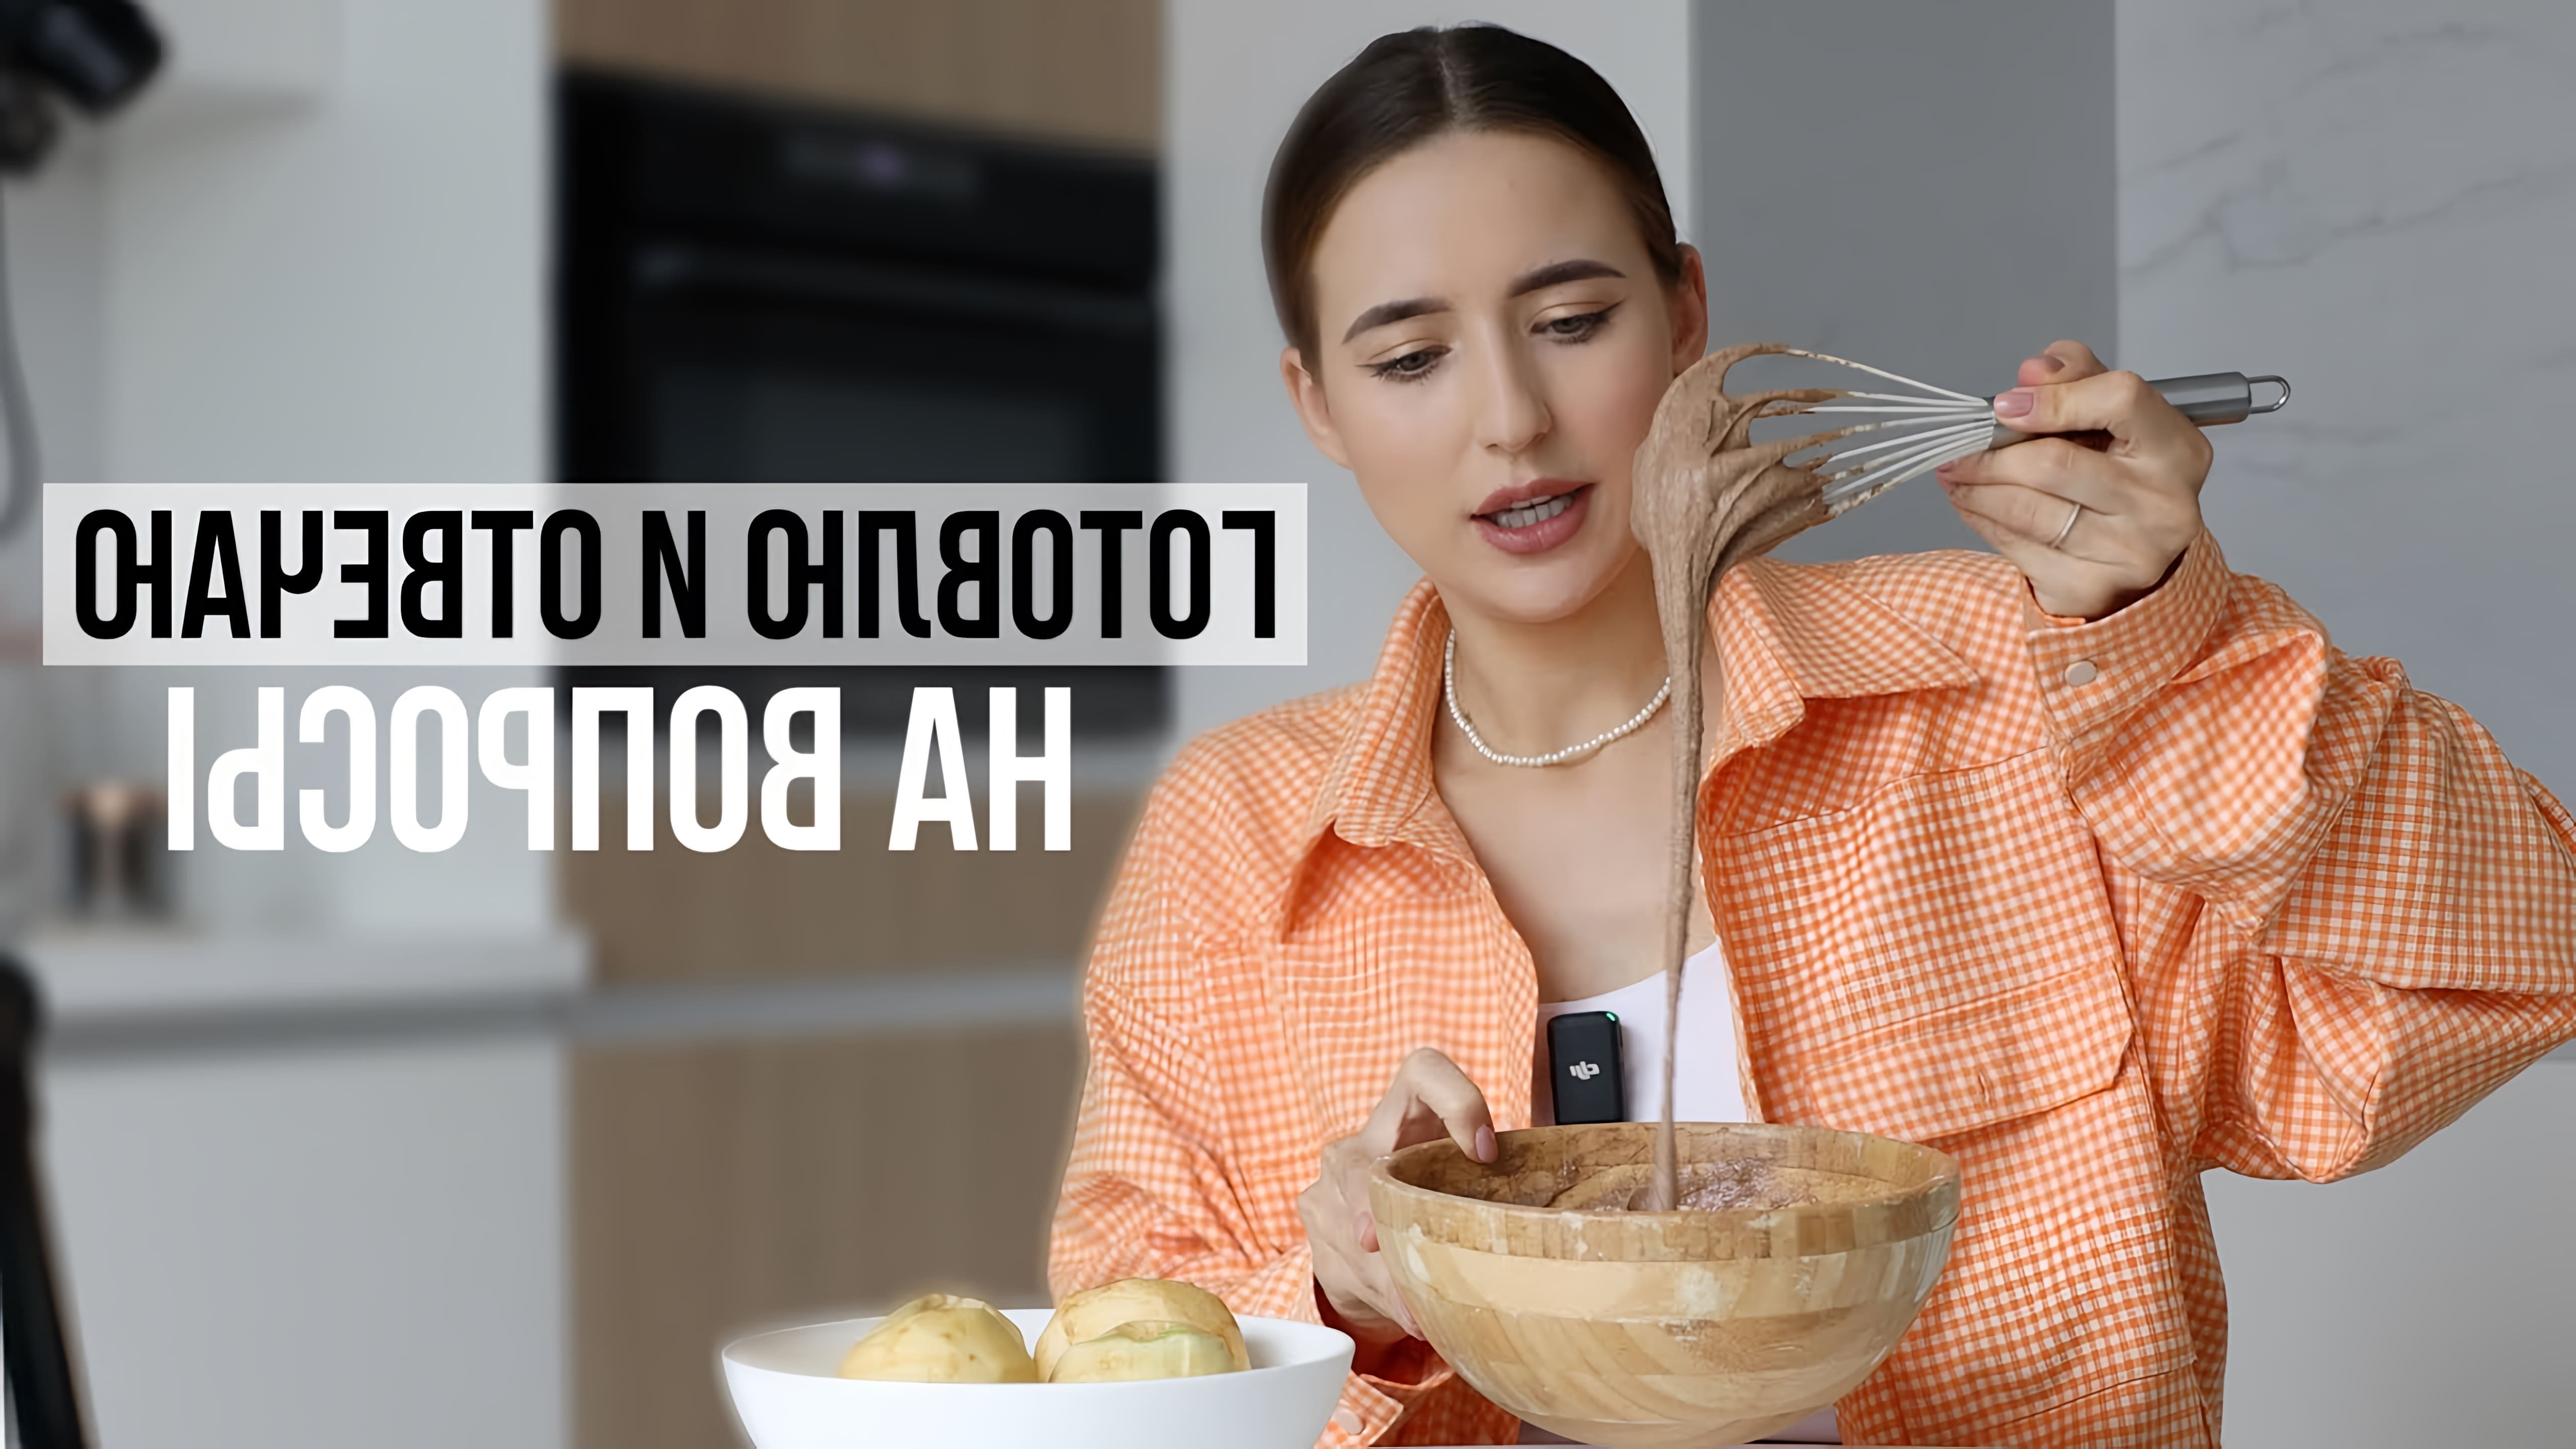 В этом видео блогер рассказывает о своем отношении к брендам, распорядке дня и рецепте ПП шарлотки